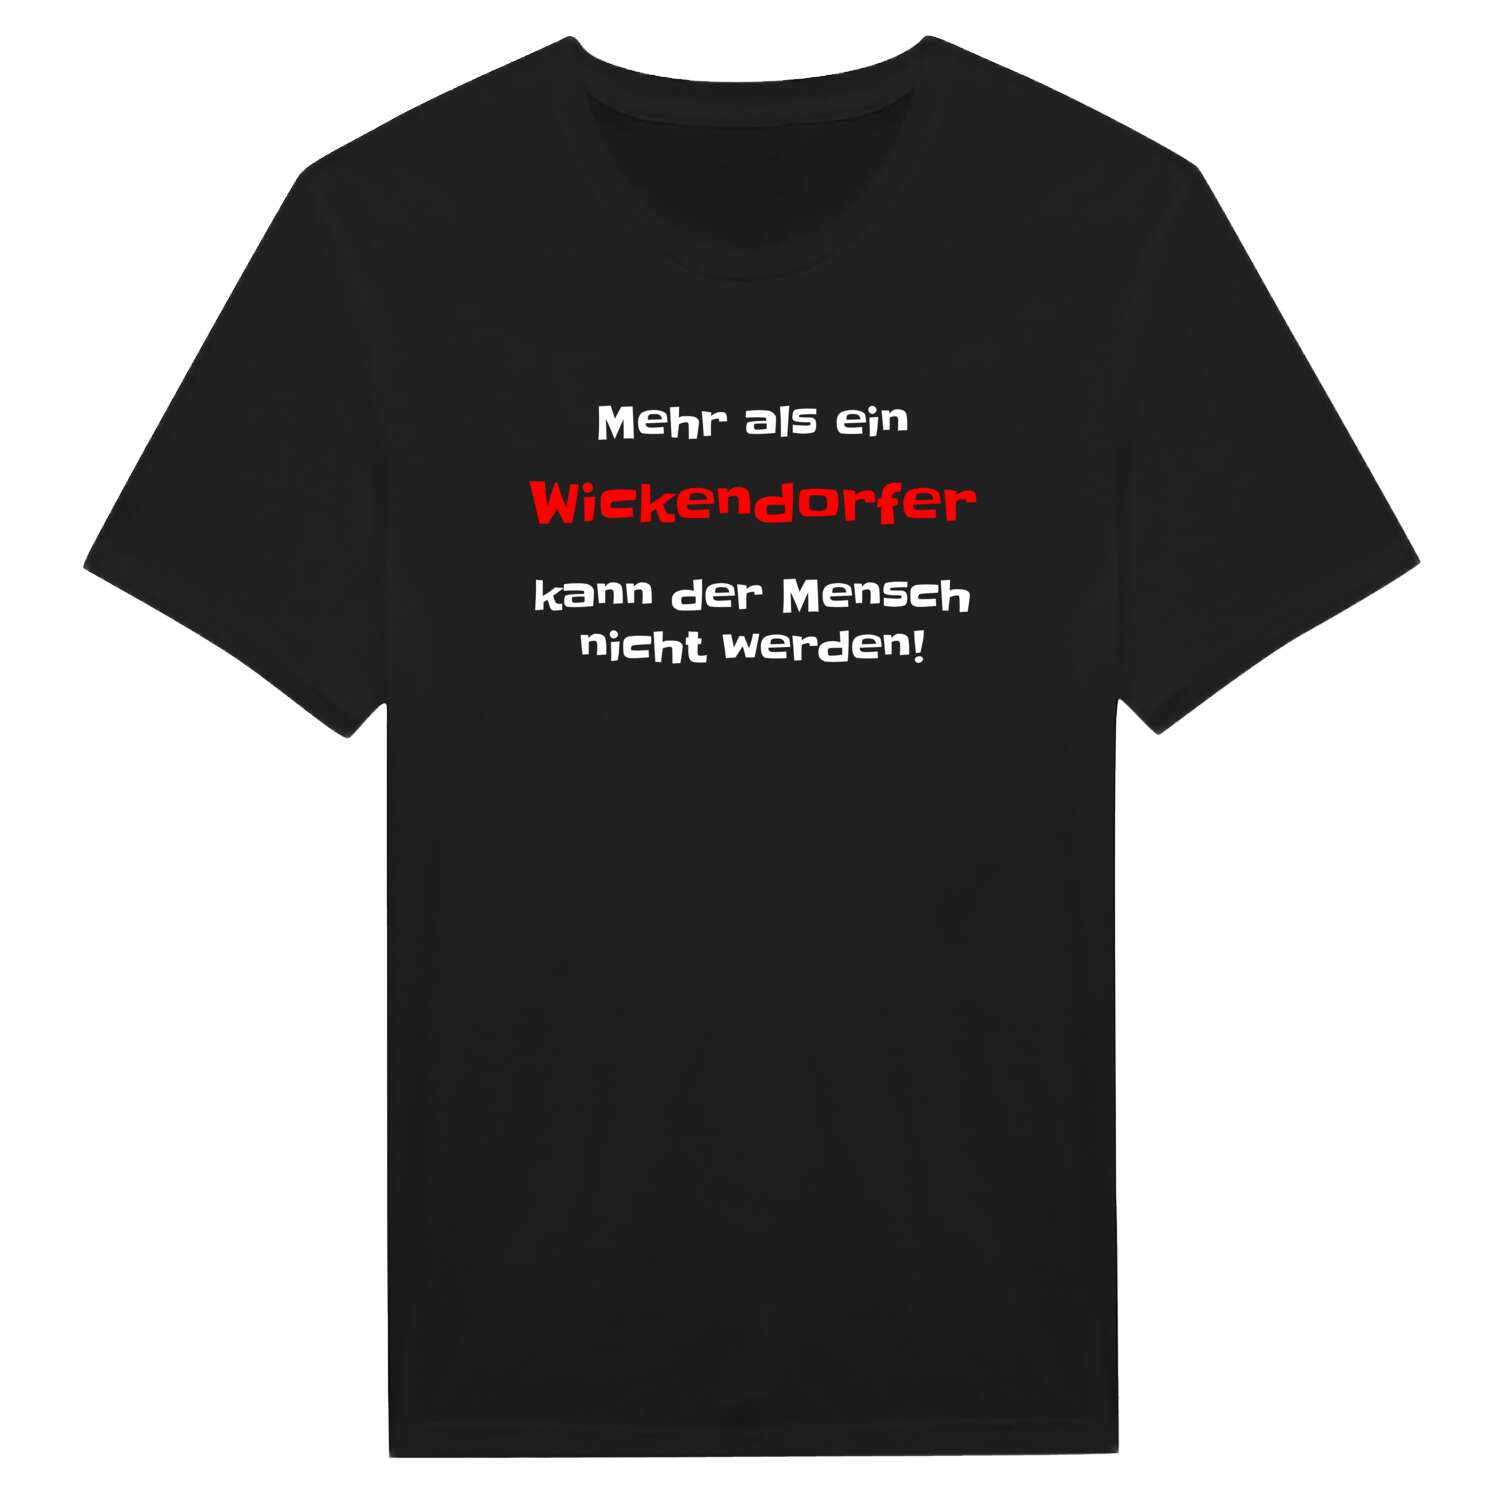 Wickendorf T-Shirt »Mehr als ein«